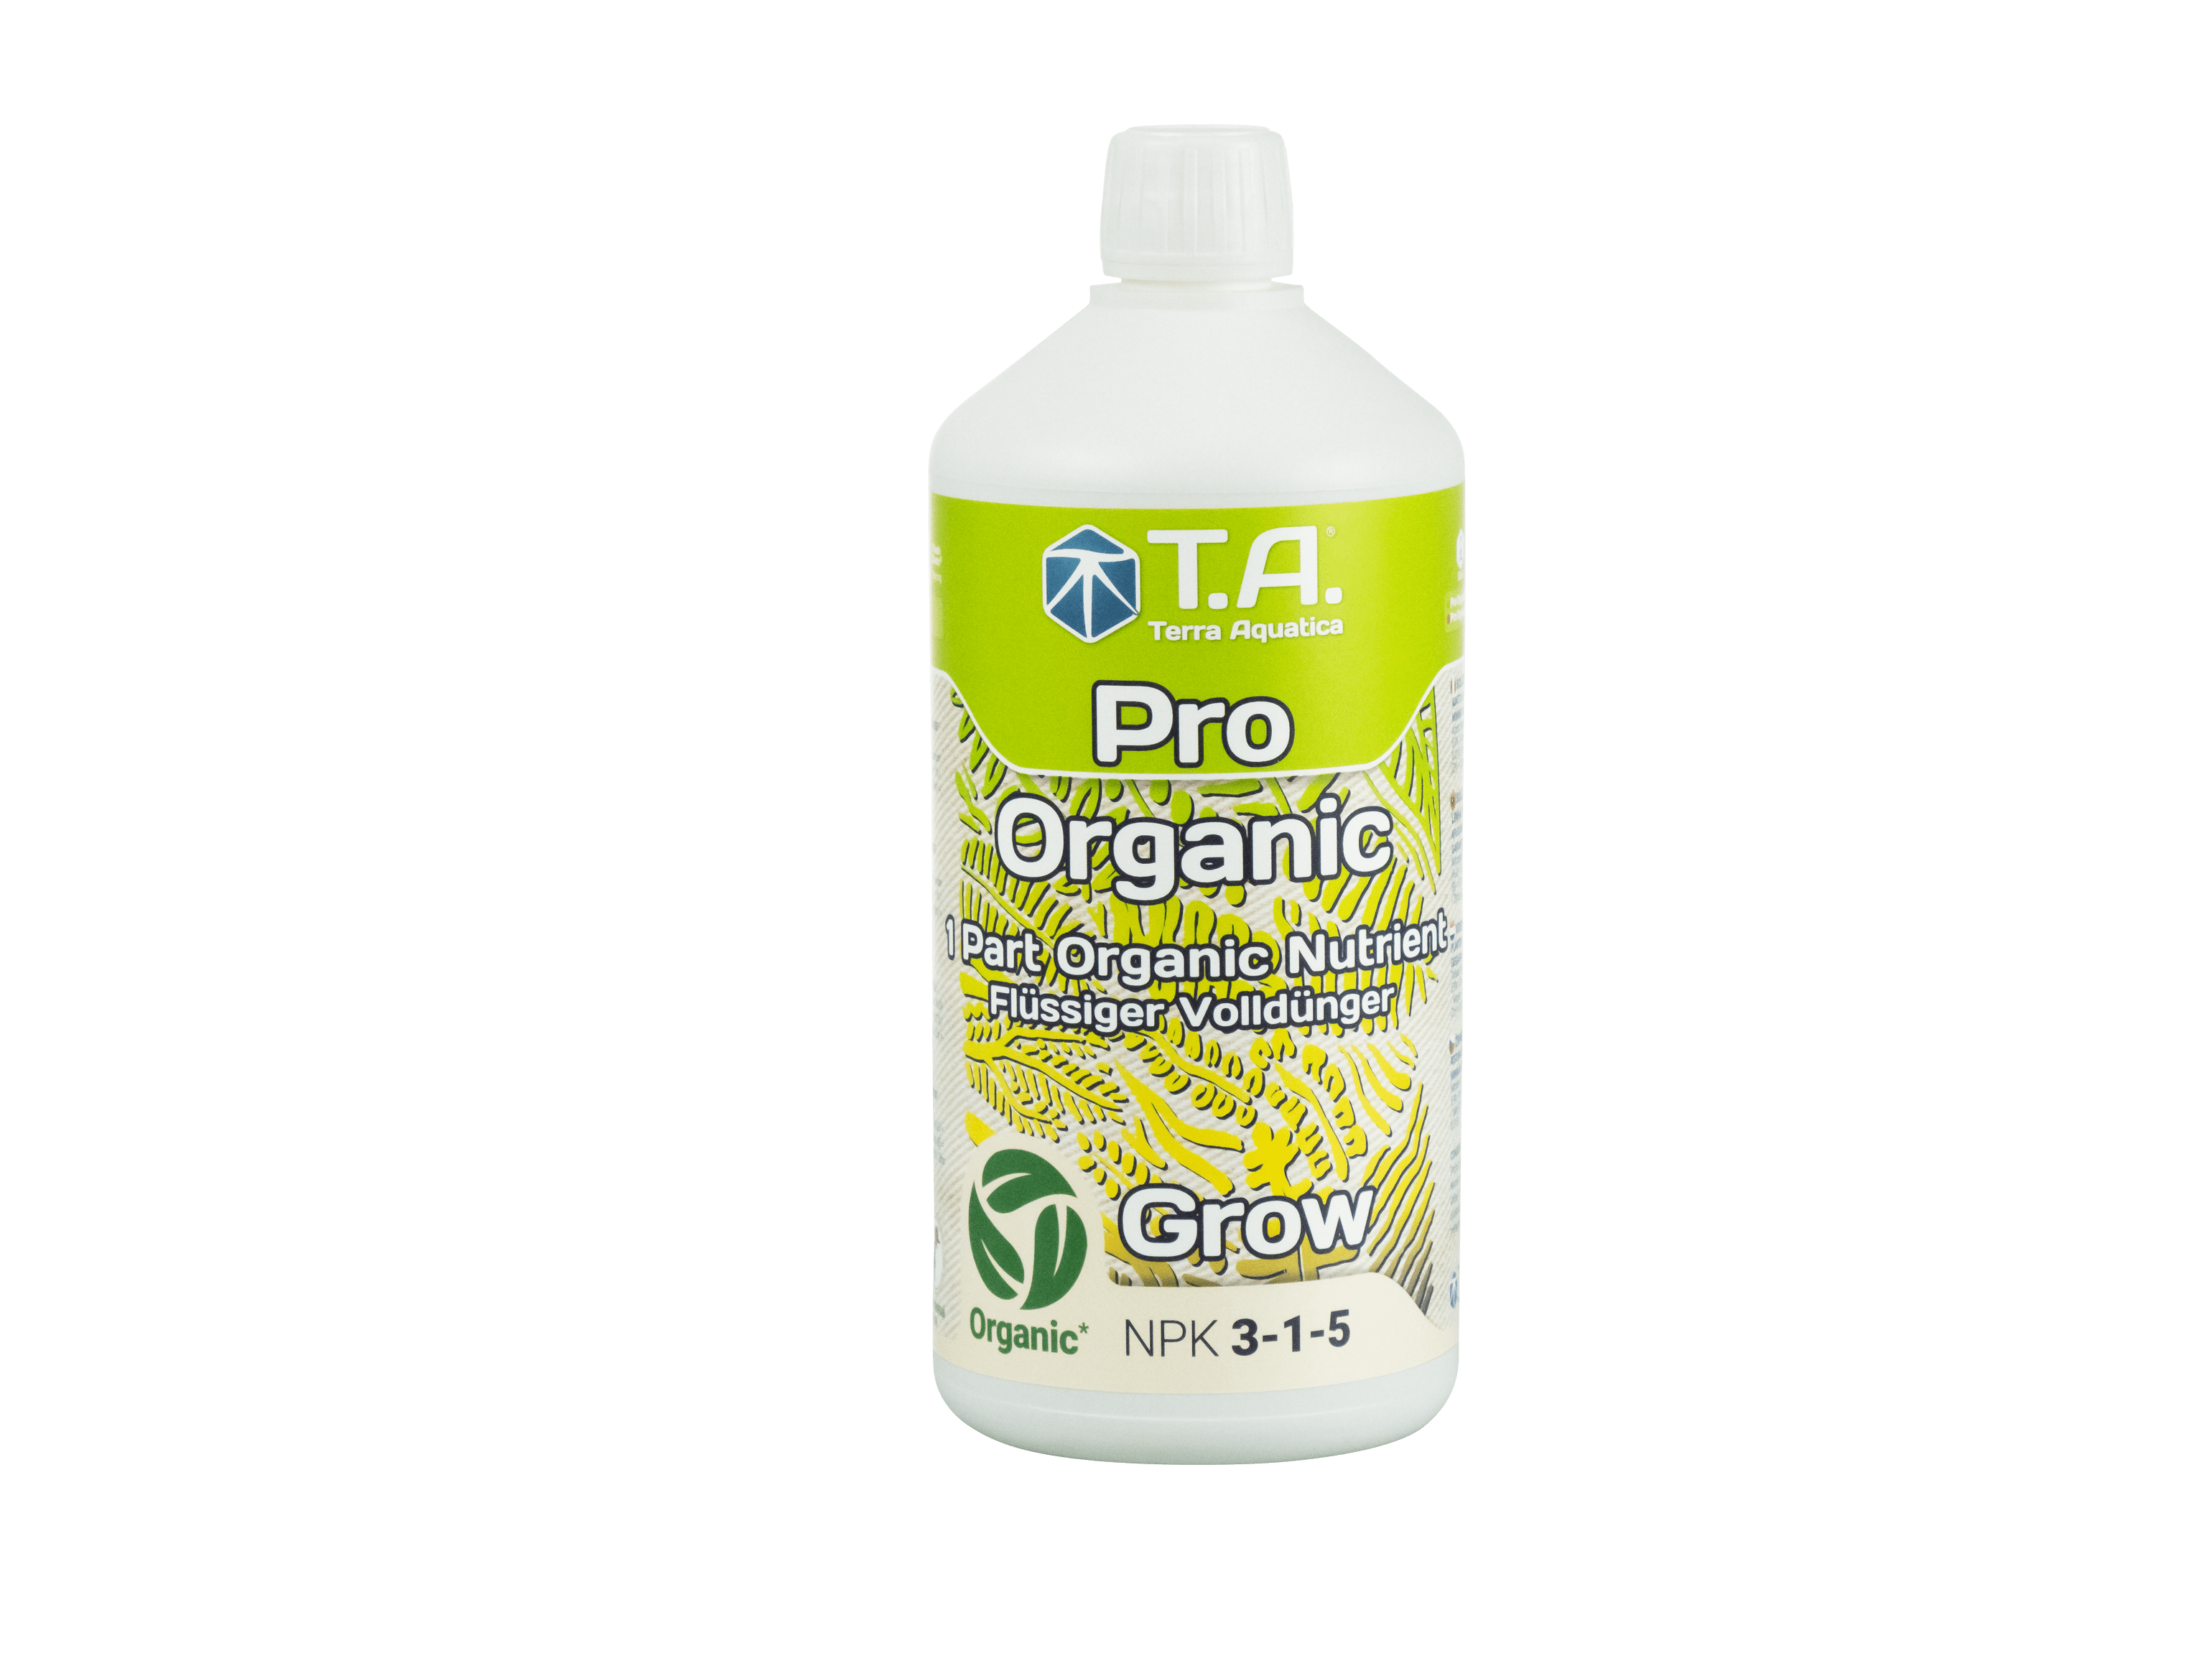 Nutrients Terra Aquatica Pro Organic Grow